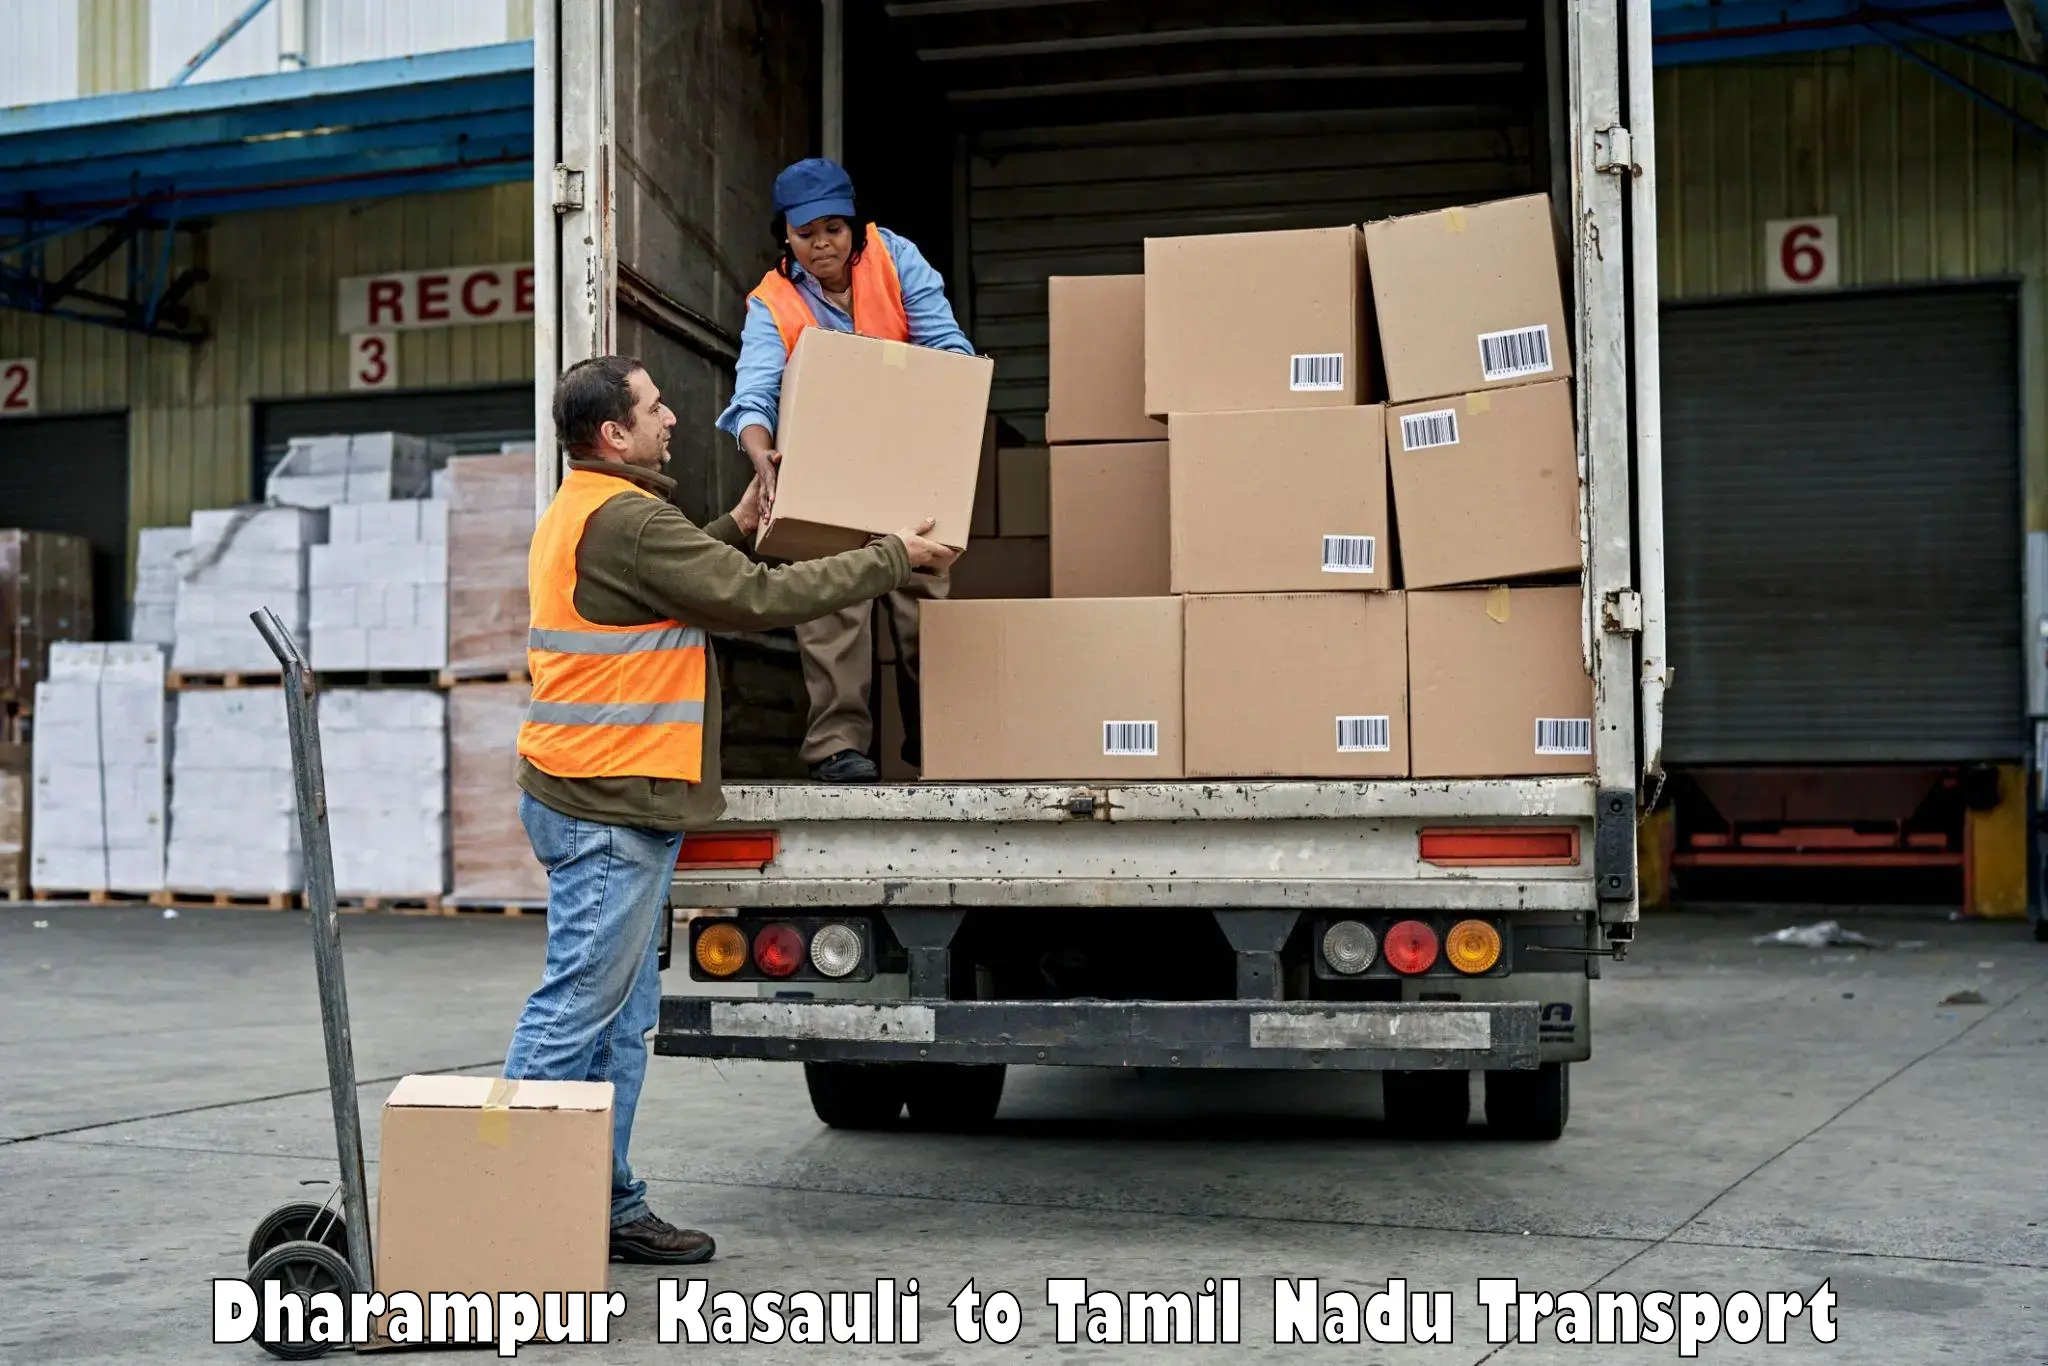 Pick up transport service Dharampur Kasauli to Kagithapuram